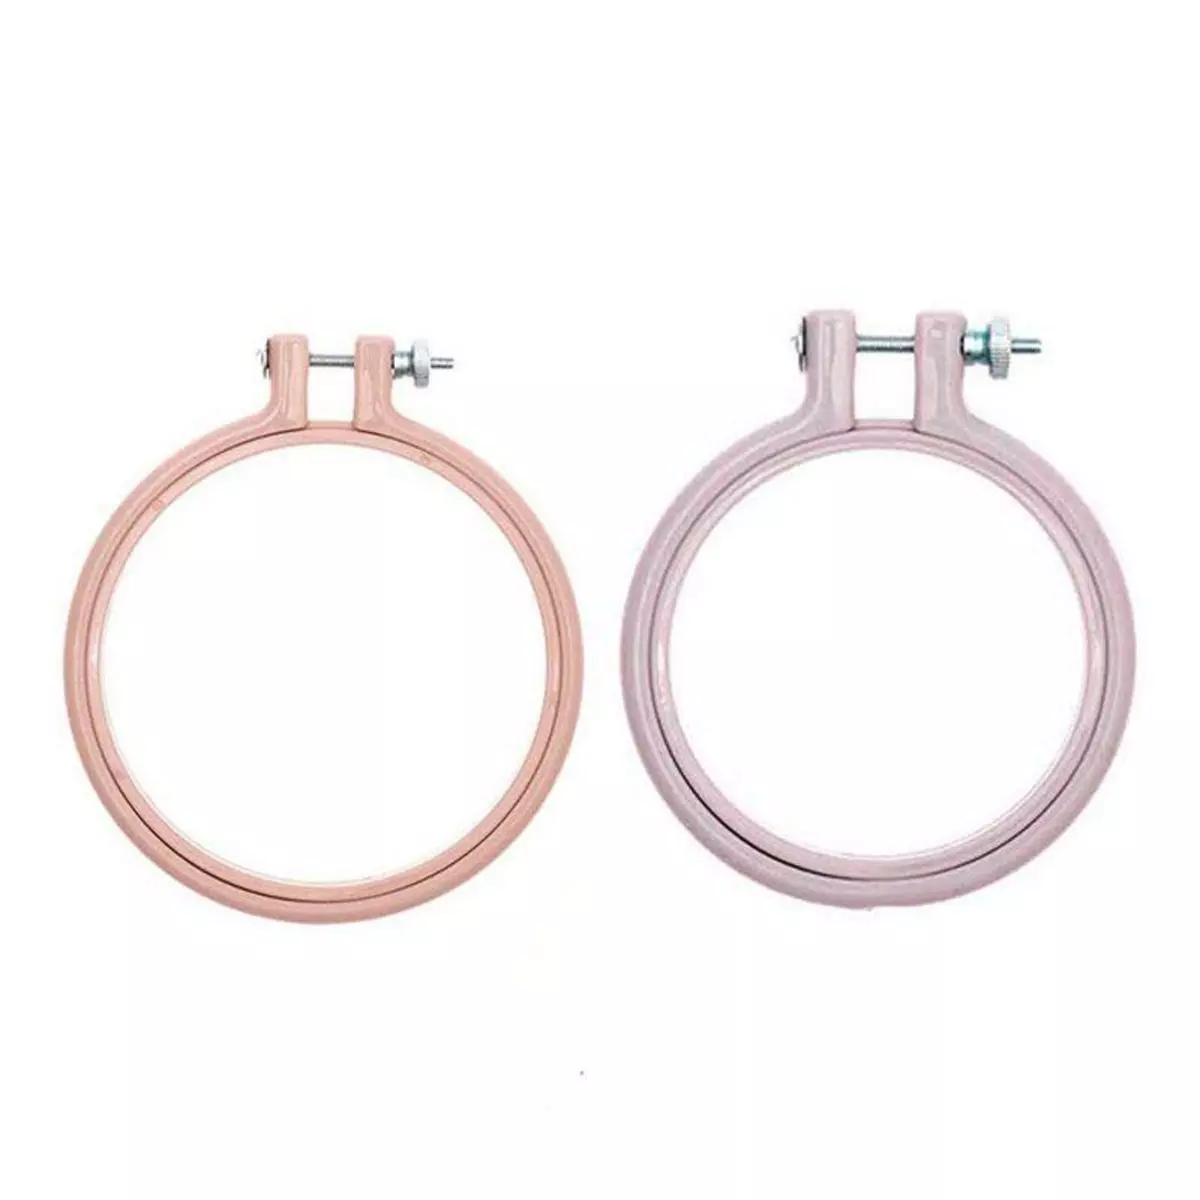 RICO DESIGN 2 anneaux de broderie - rose 10,1 cm + lavande 7,6 cm